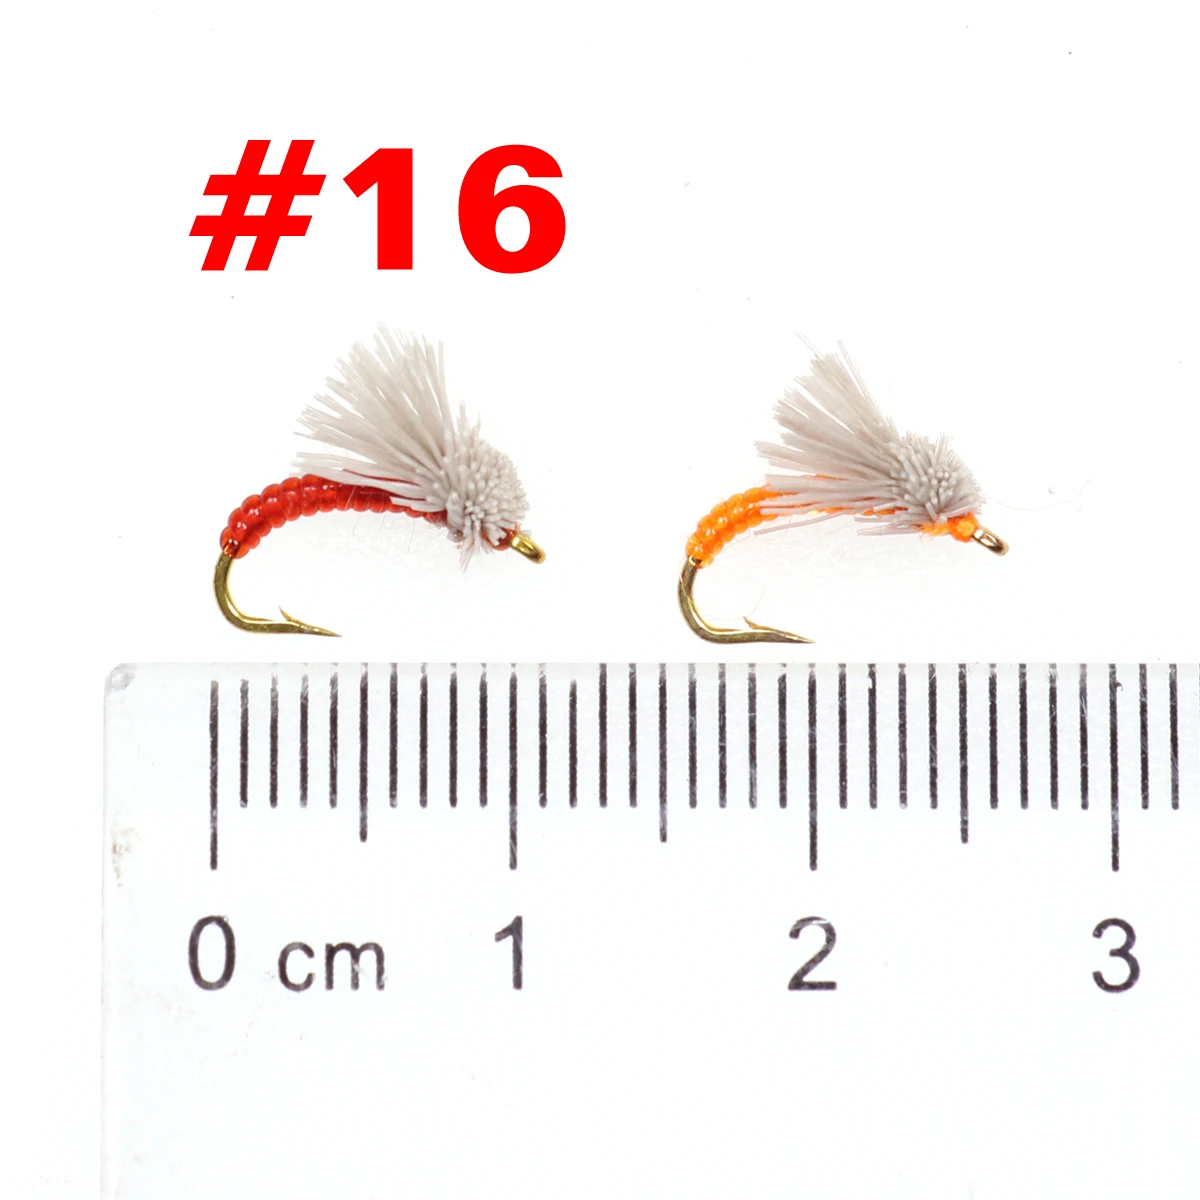 Wifreo 8 шт.#16 Serendipity Emergers Nymphs Fly приманка для рыбалки искусственное насекомое приманка для форели